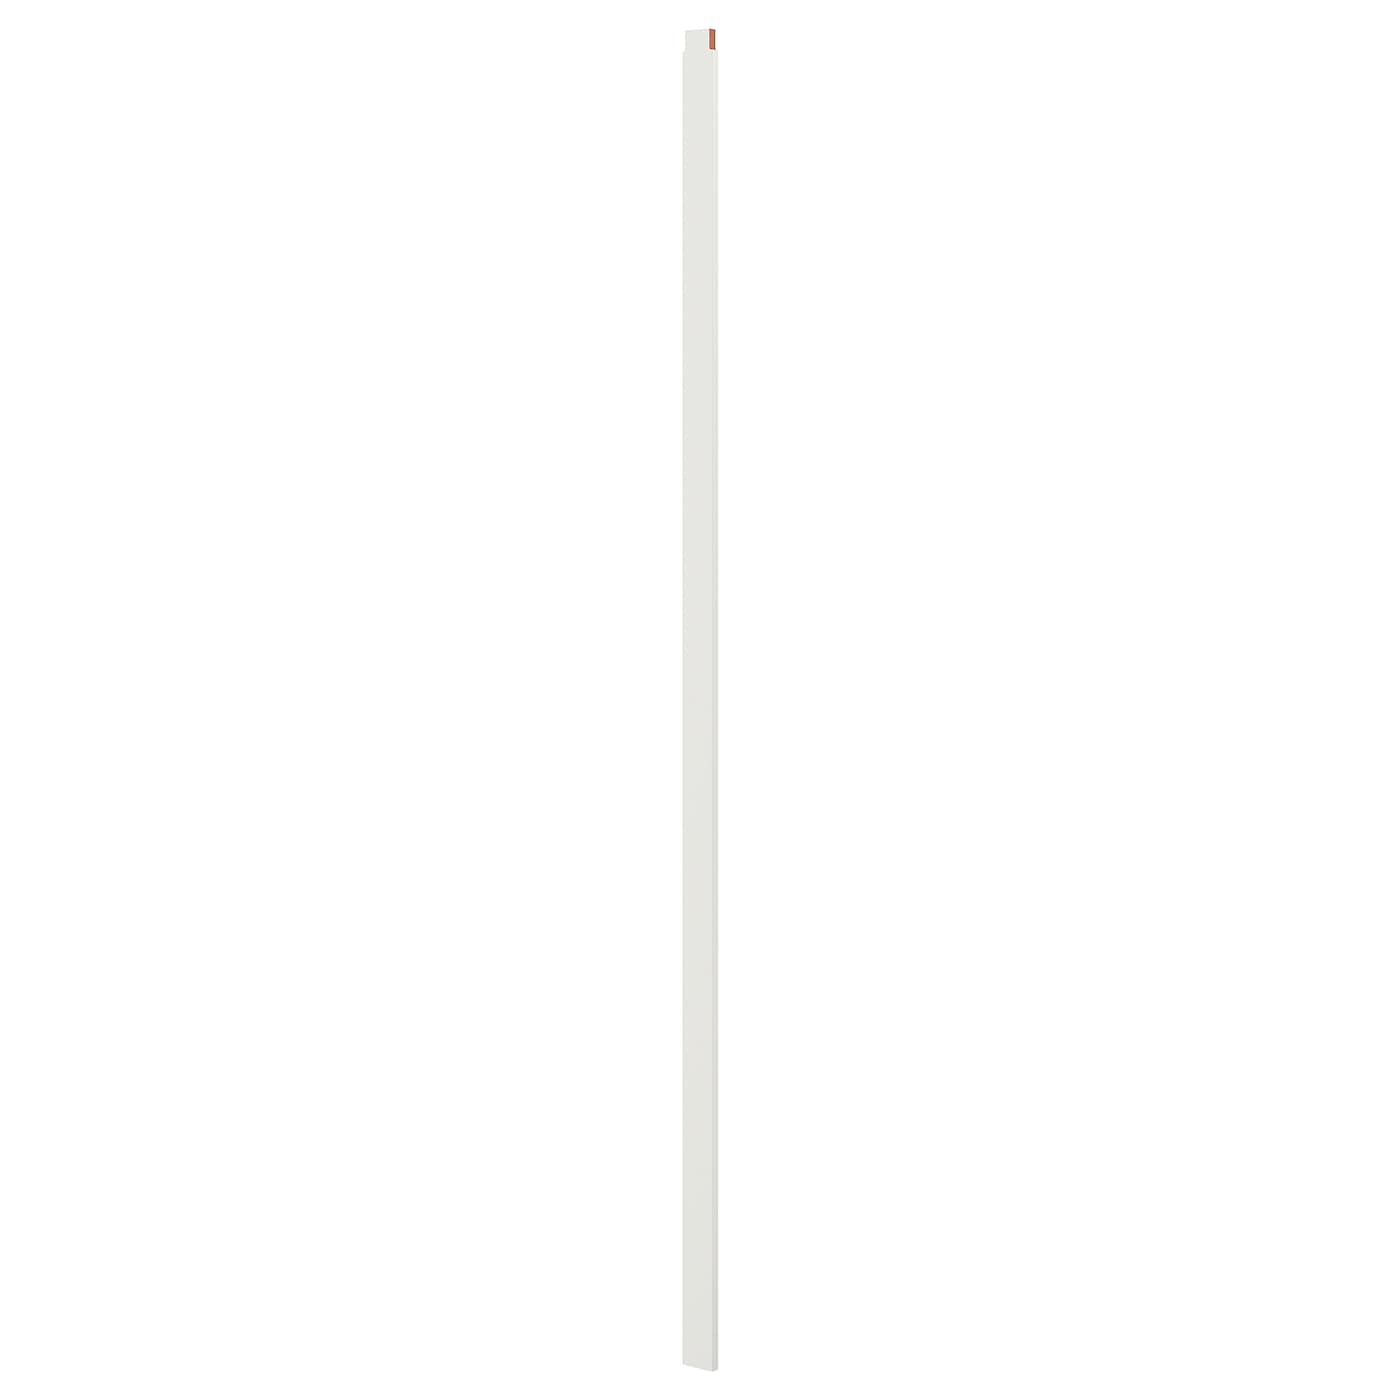 IKEA SKYTTA Ogranicznik, 2 tory, kpl. 2 szt, biały, Wysokość: 240.0 cm